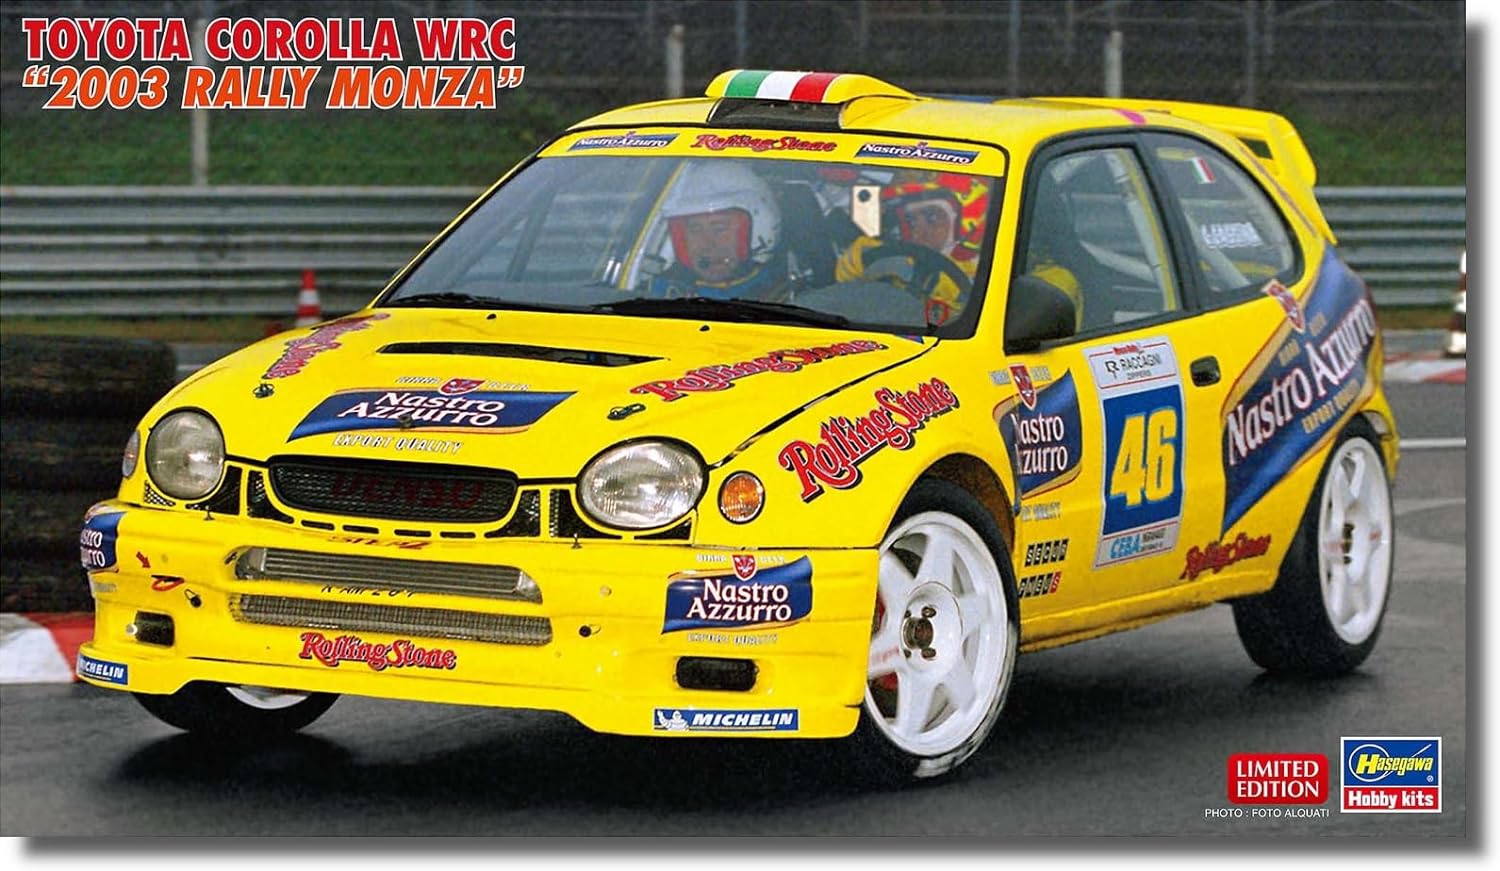 Hasegawa 20686 1/24 Toyota Corolla WRC 2003 Rally Monza Plastic Model